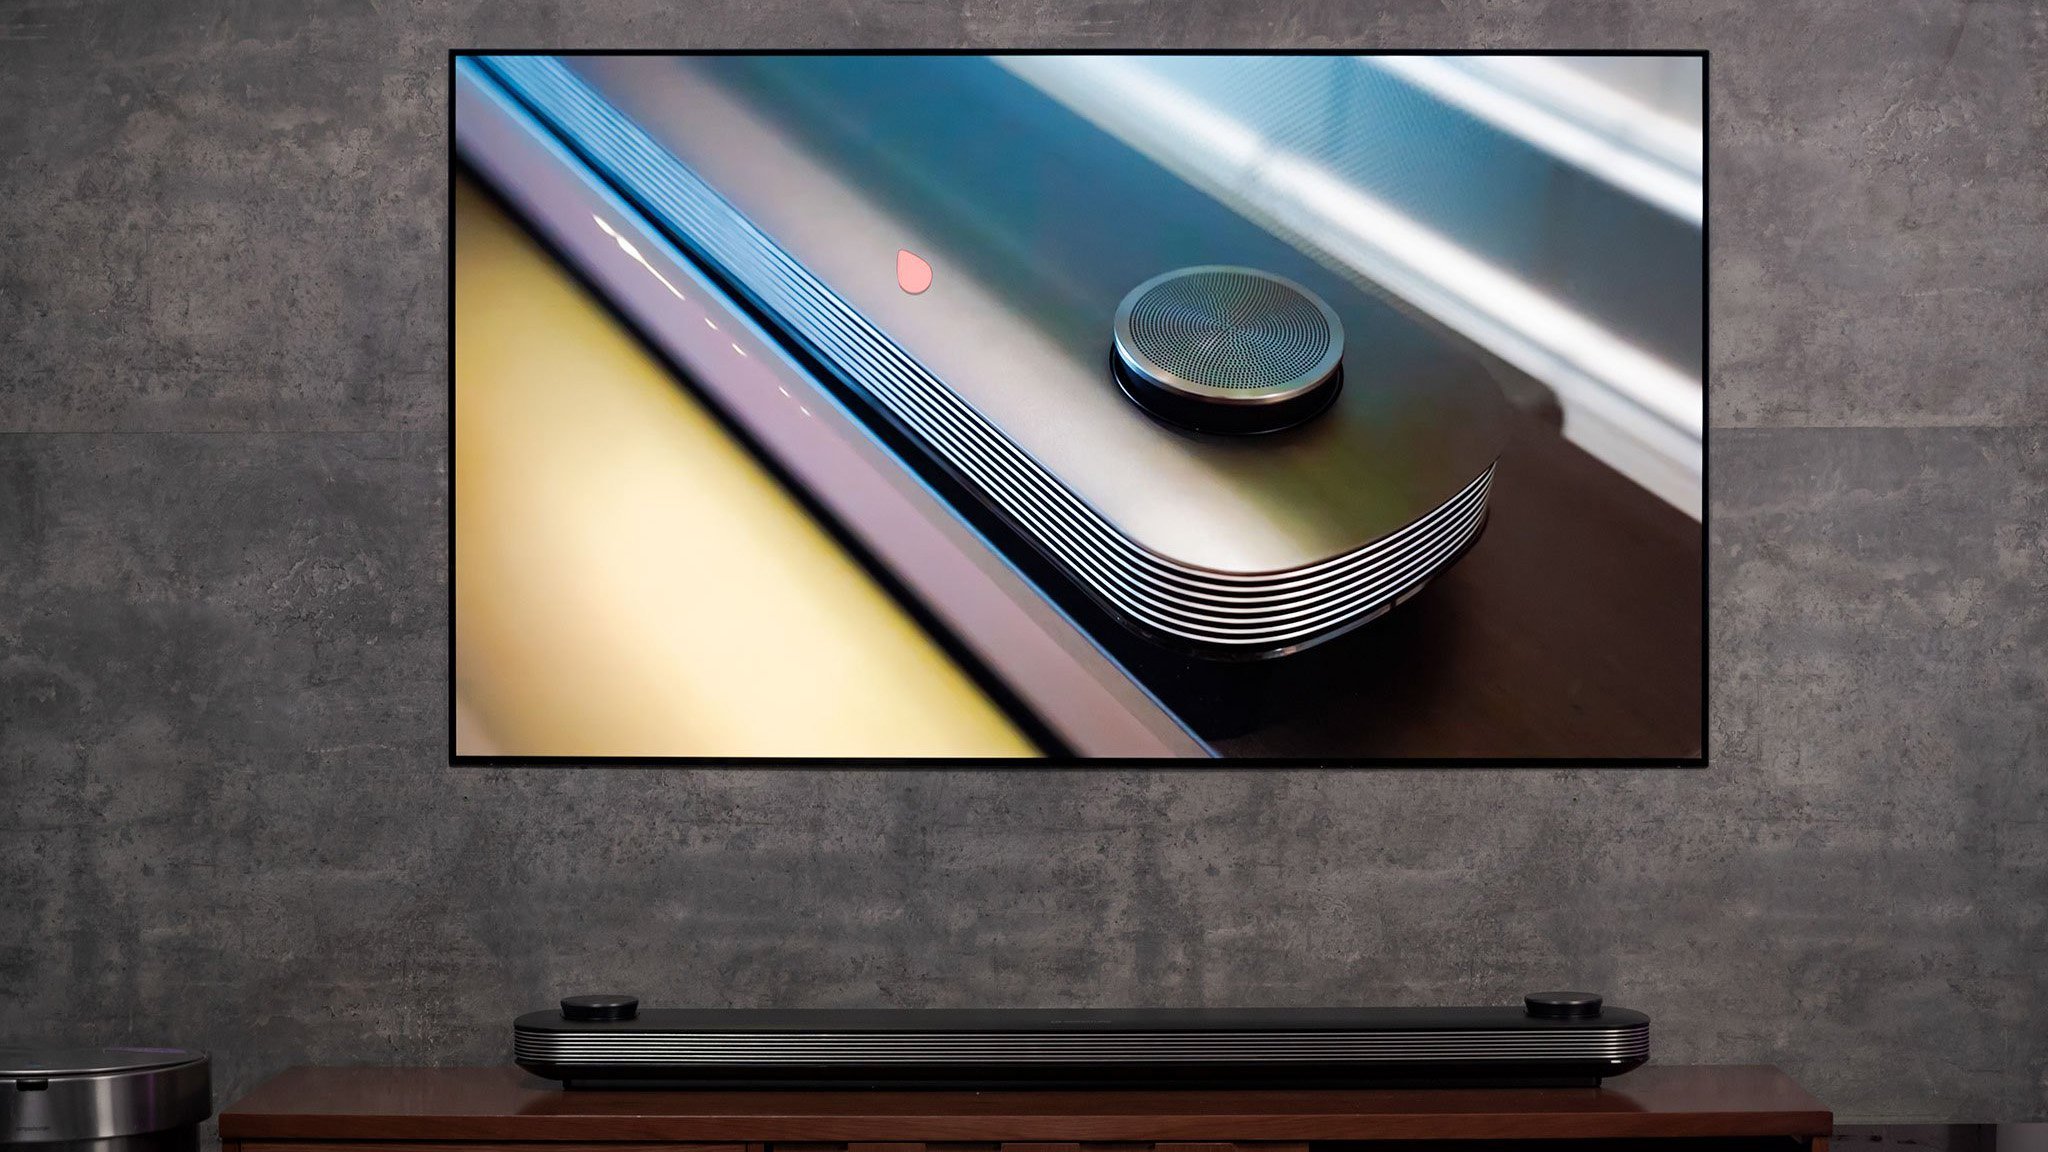 Lại nói về công nghệ TV OLED, thời gian chứng minh rằng LG đã đúng